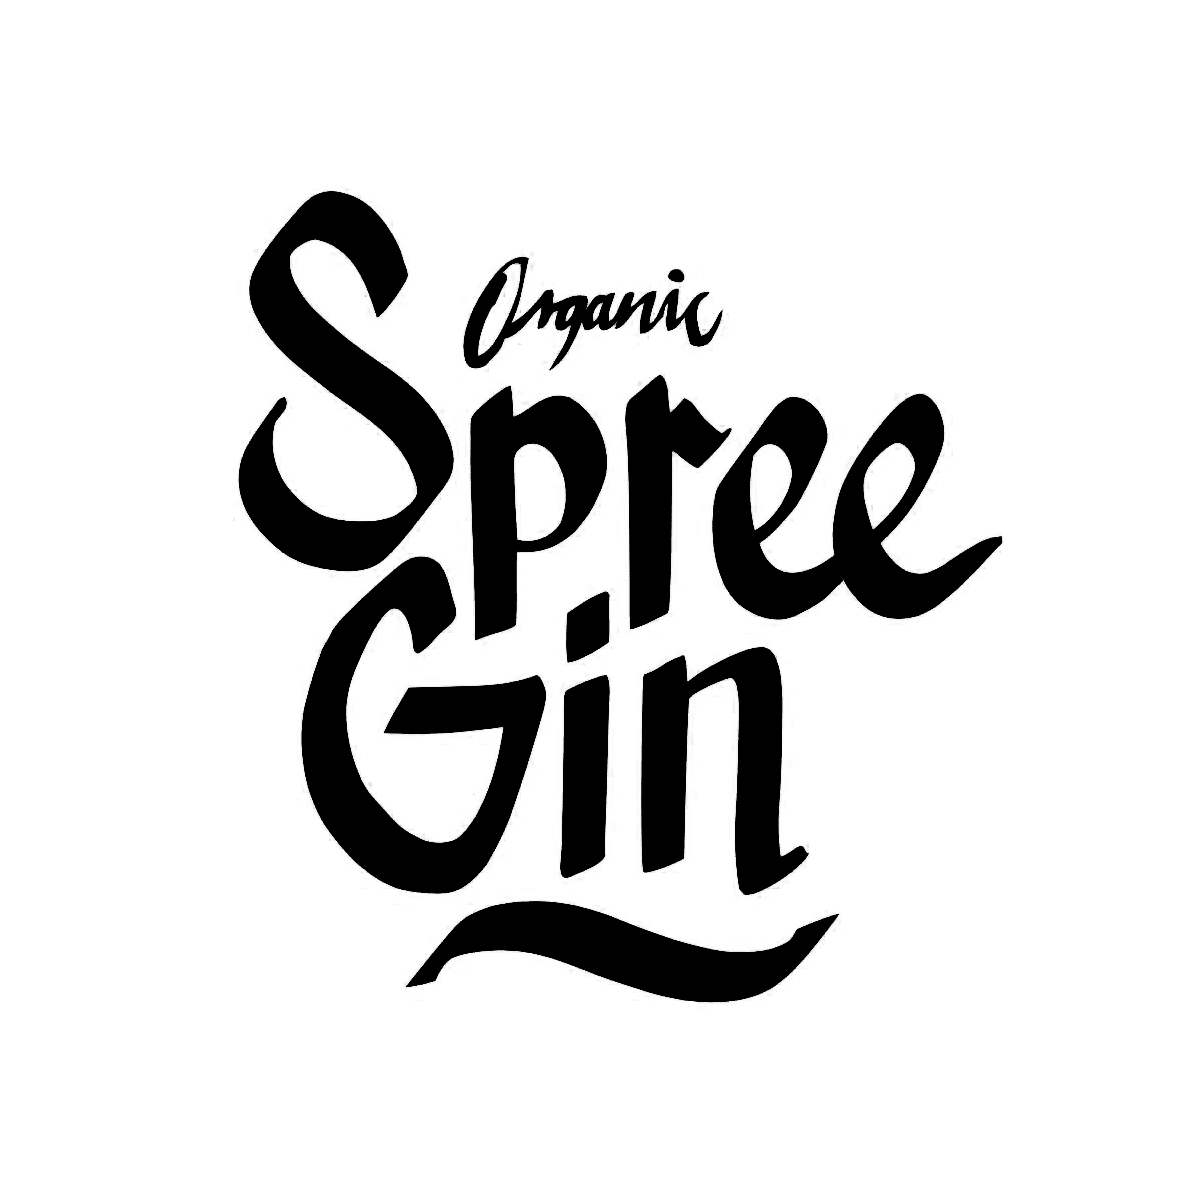 Grote + Co. Spree Gin Logo